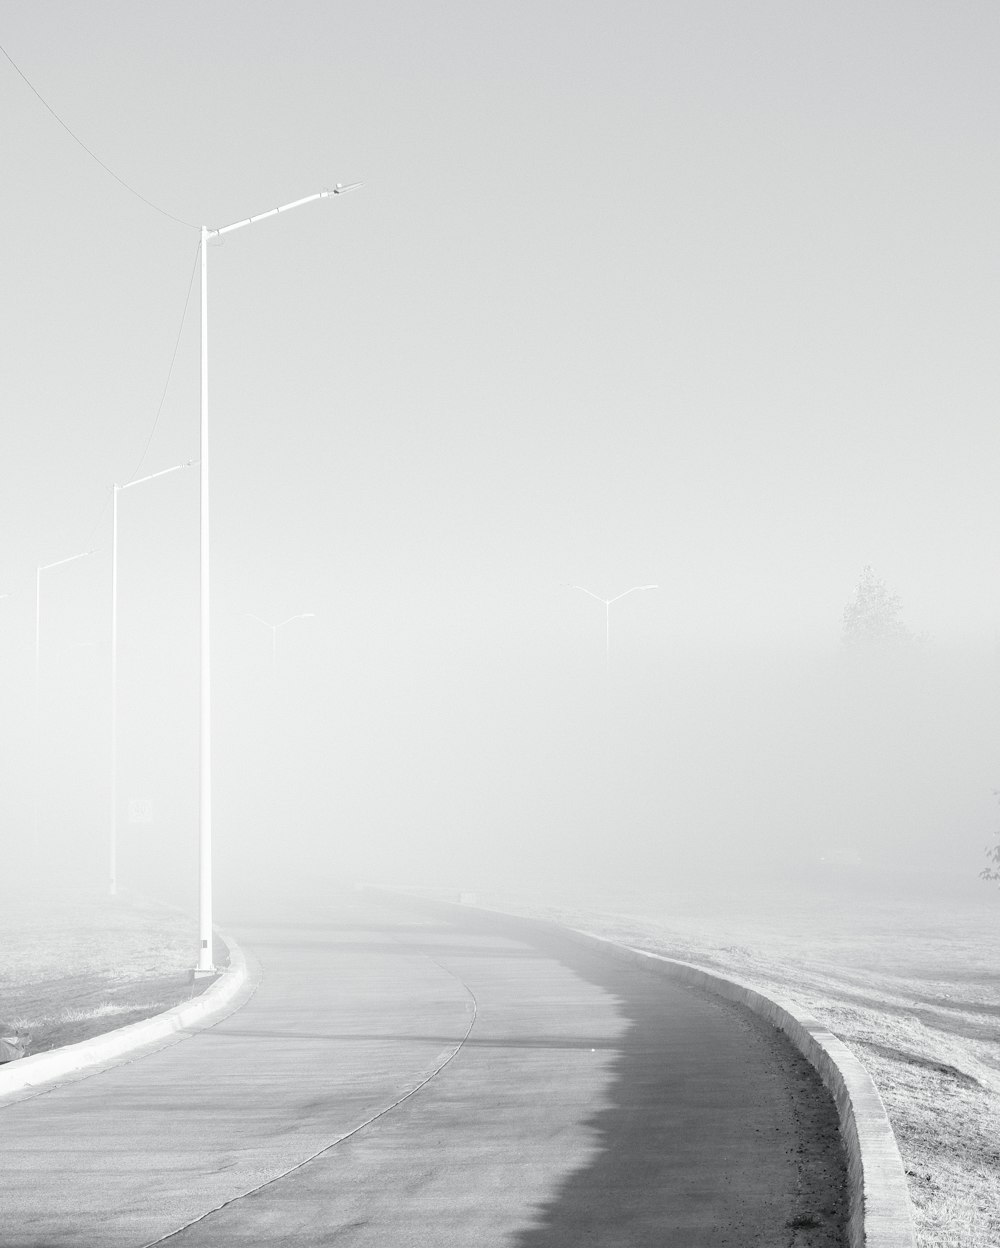 Une photo en noir et blanc d’une route brumeuse